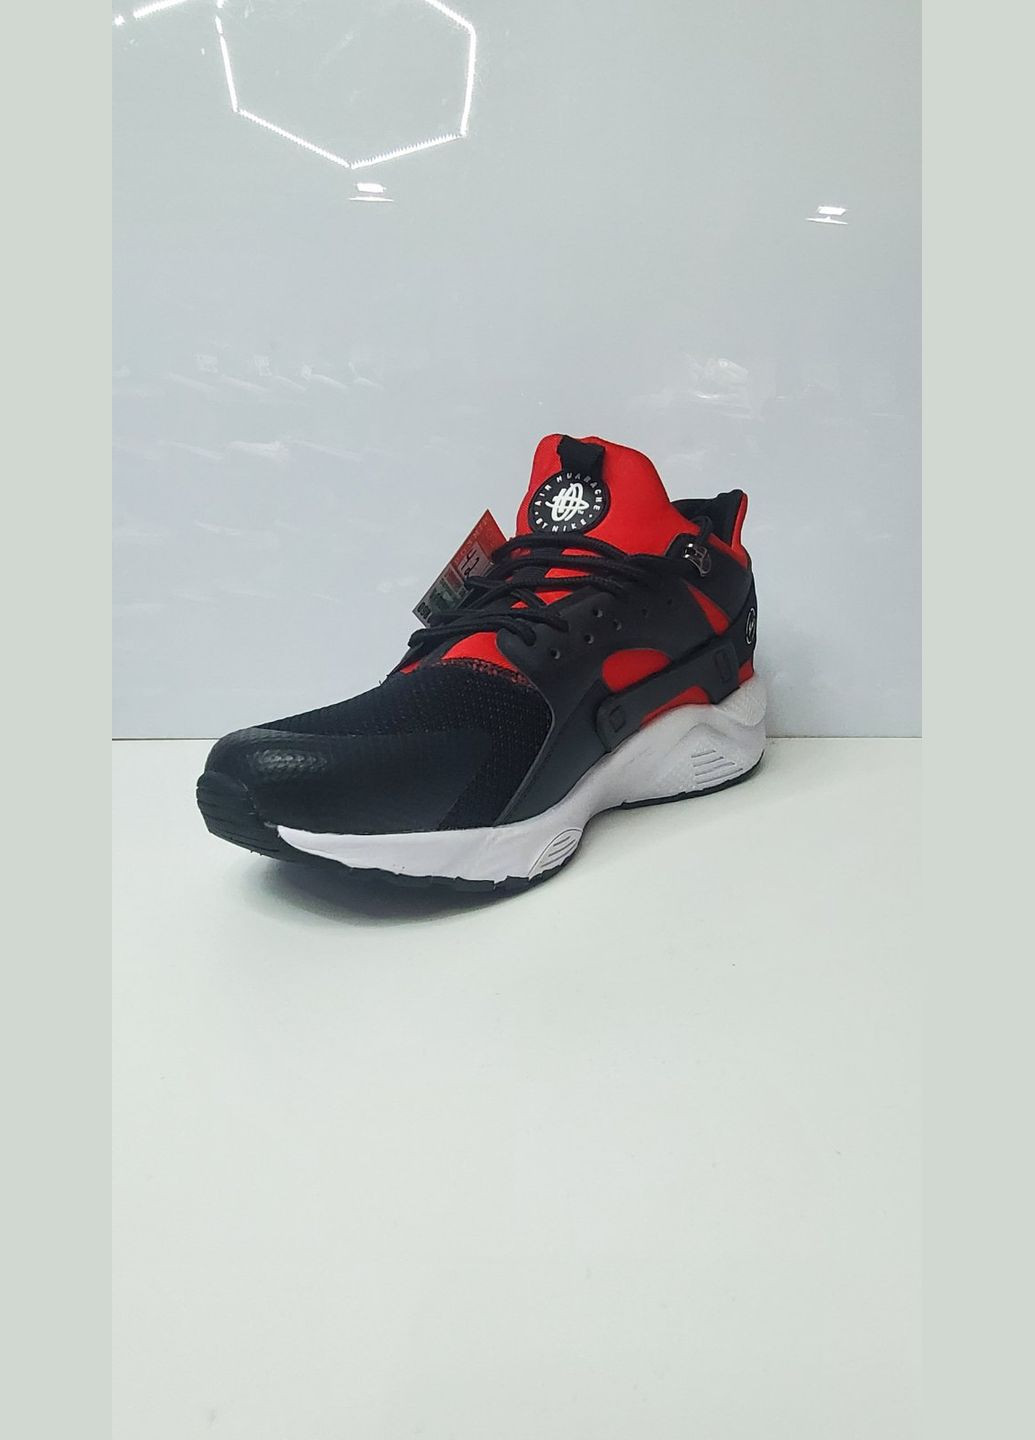 Красные кроссовки текстильные удобные стильные практичные Nike Air